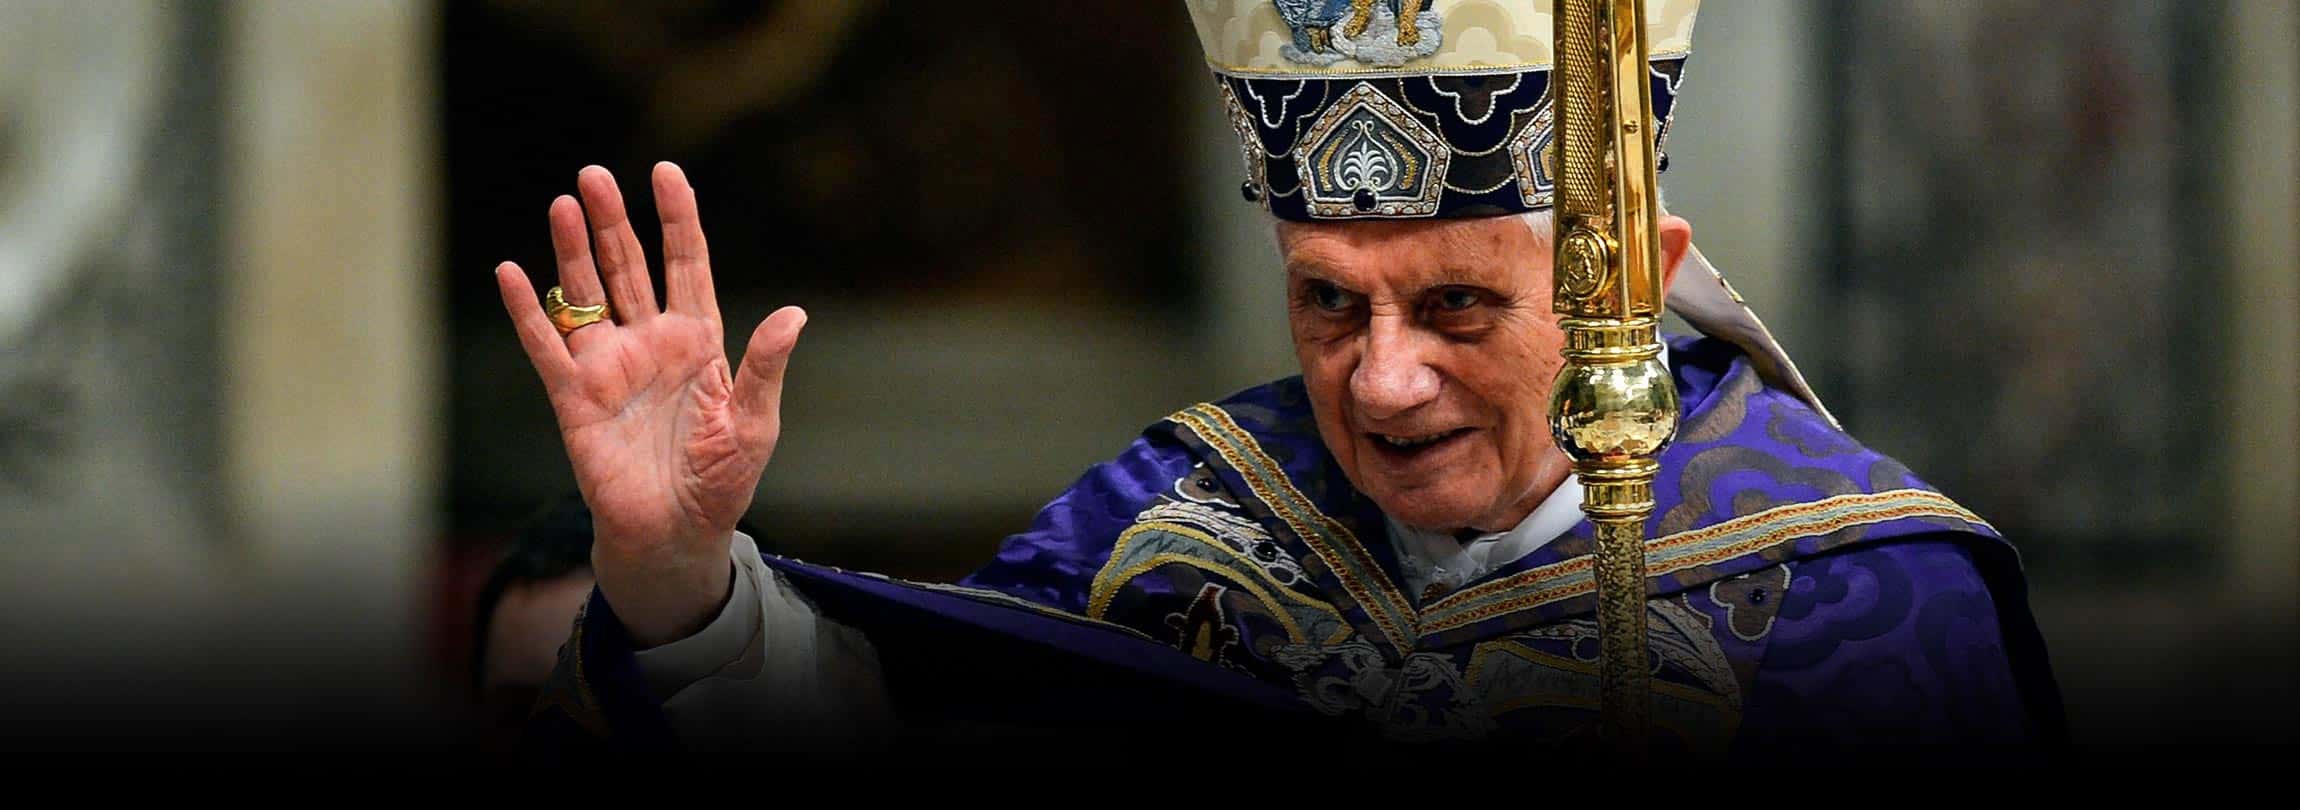 Papa Francisco, sobre Bento XVI: “Não imaginas a humildade e a sabedoria deste homem”